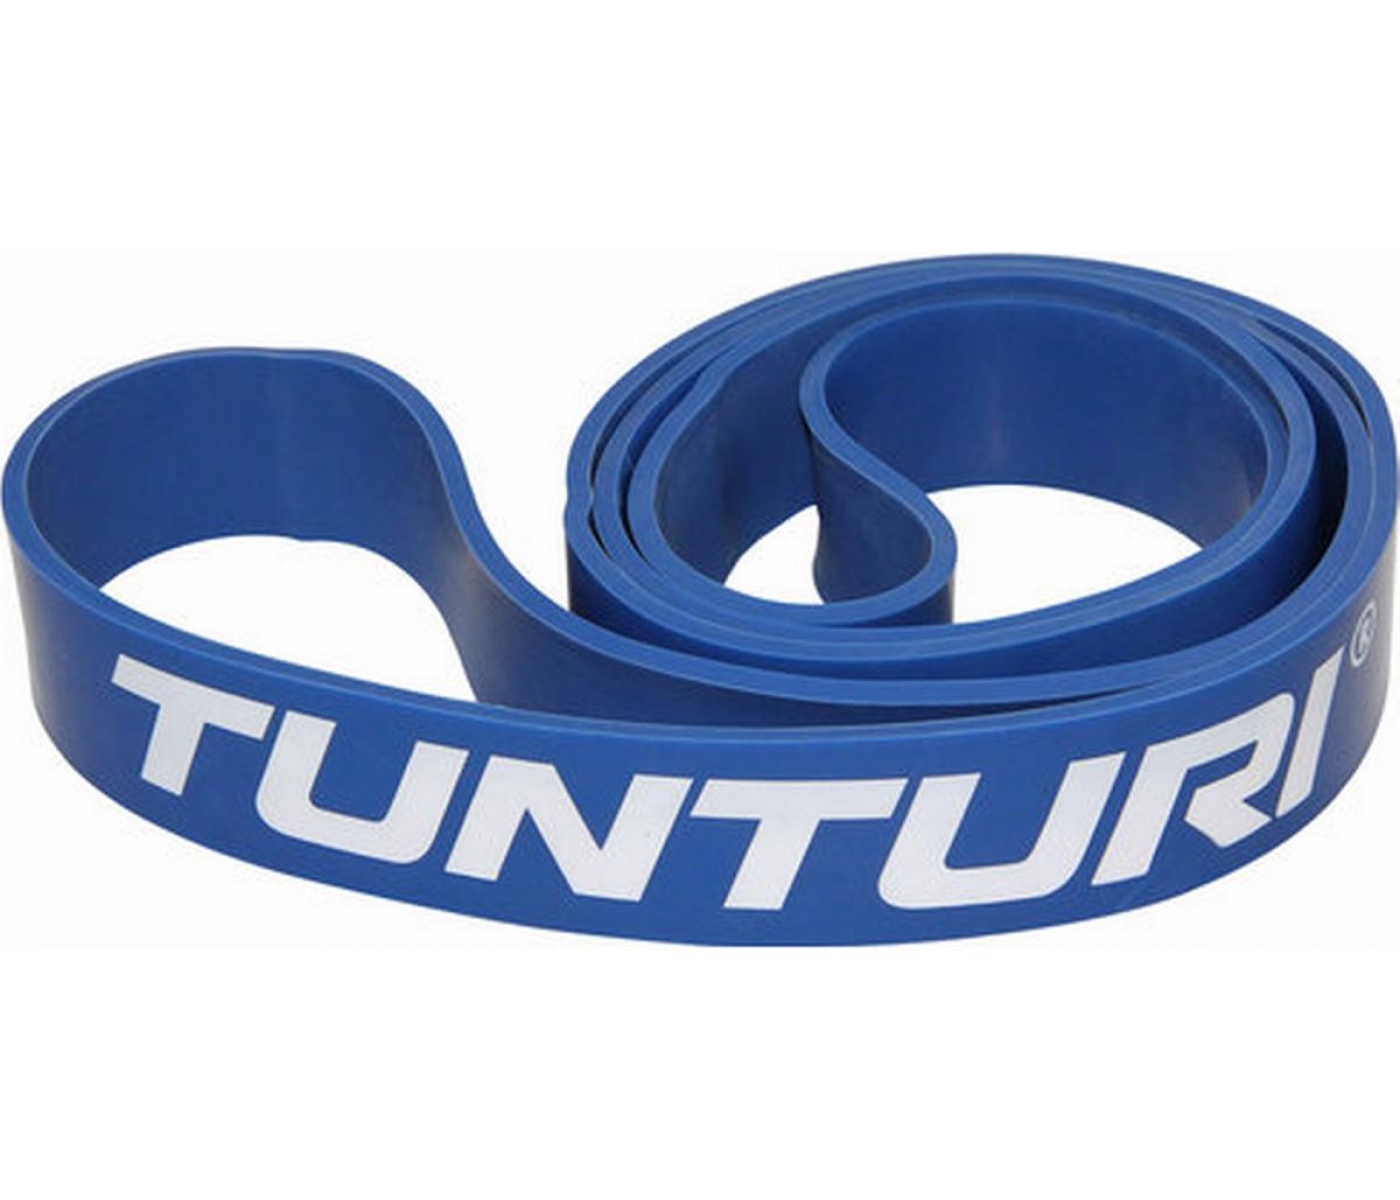 Brug Tunturi Power Band Hård til en forbedret oplevelse